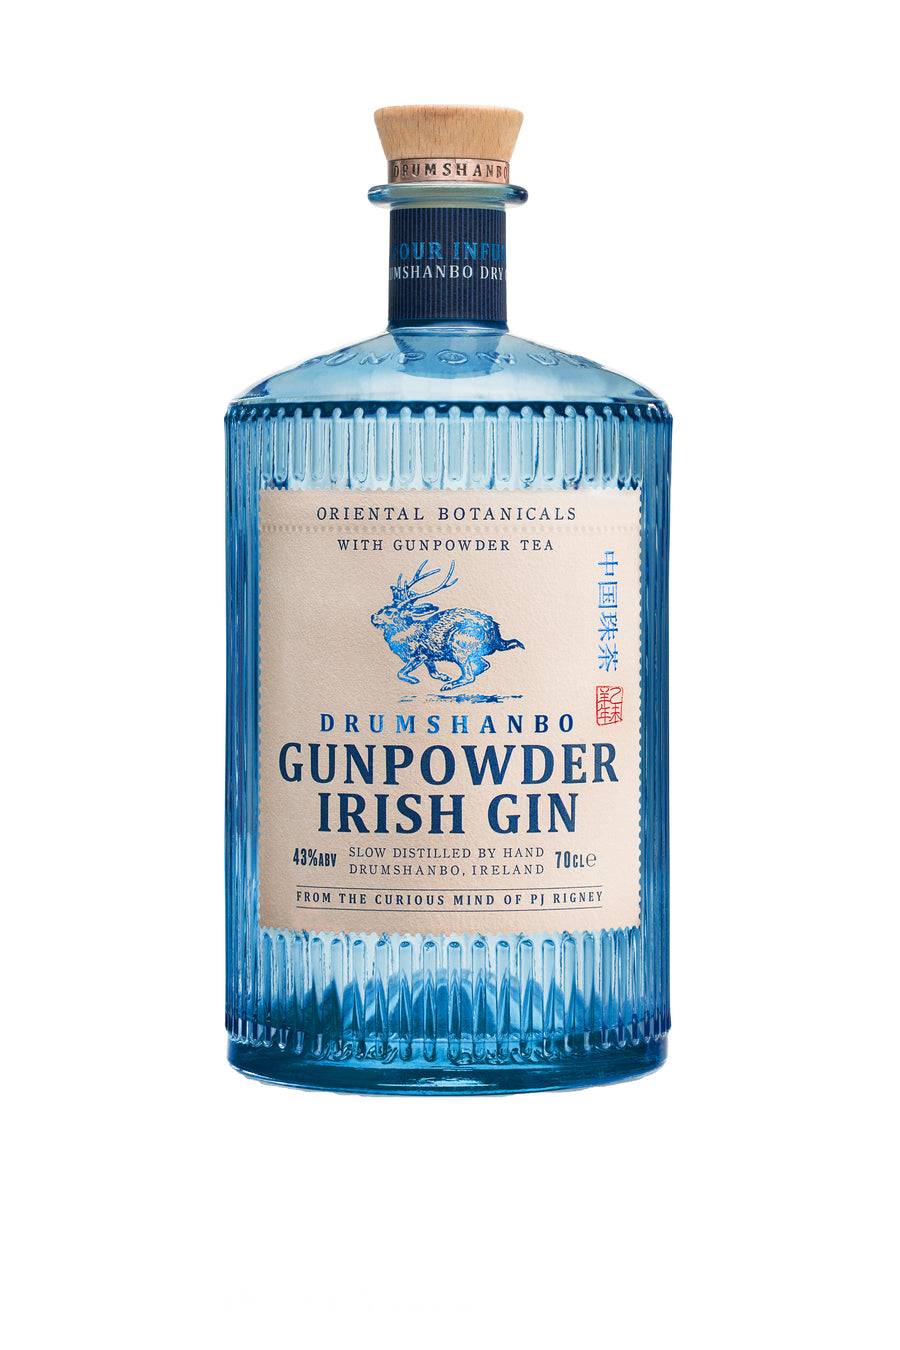 Drumshanbo Gunpowder Irish Gin (Ireland)